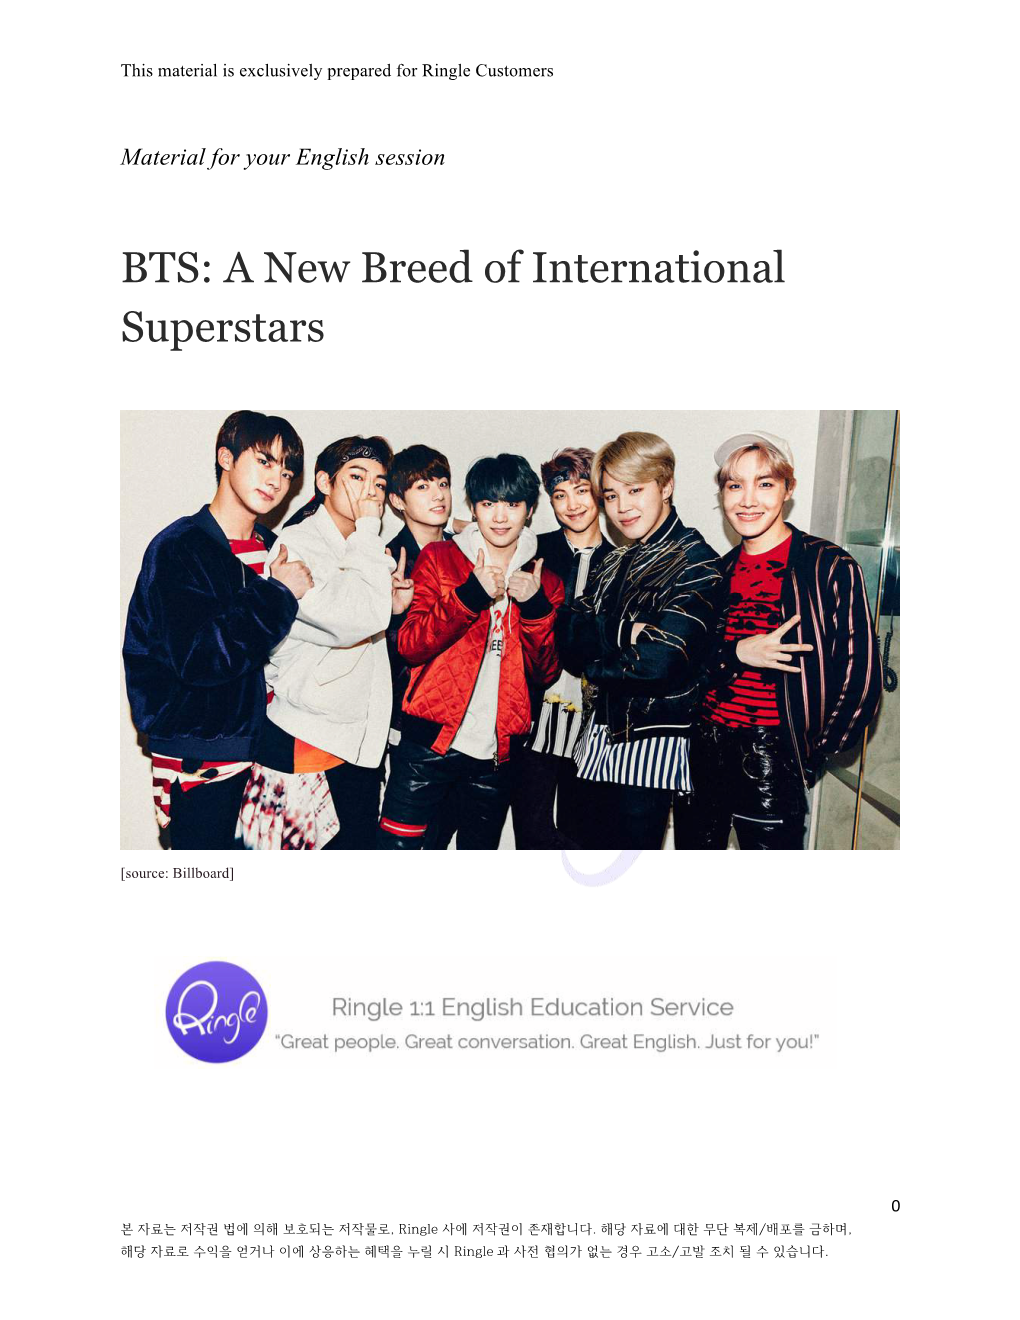 BTS: a New Breed of International Superstars